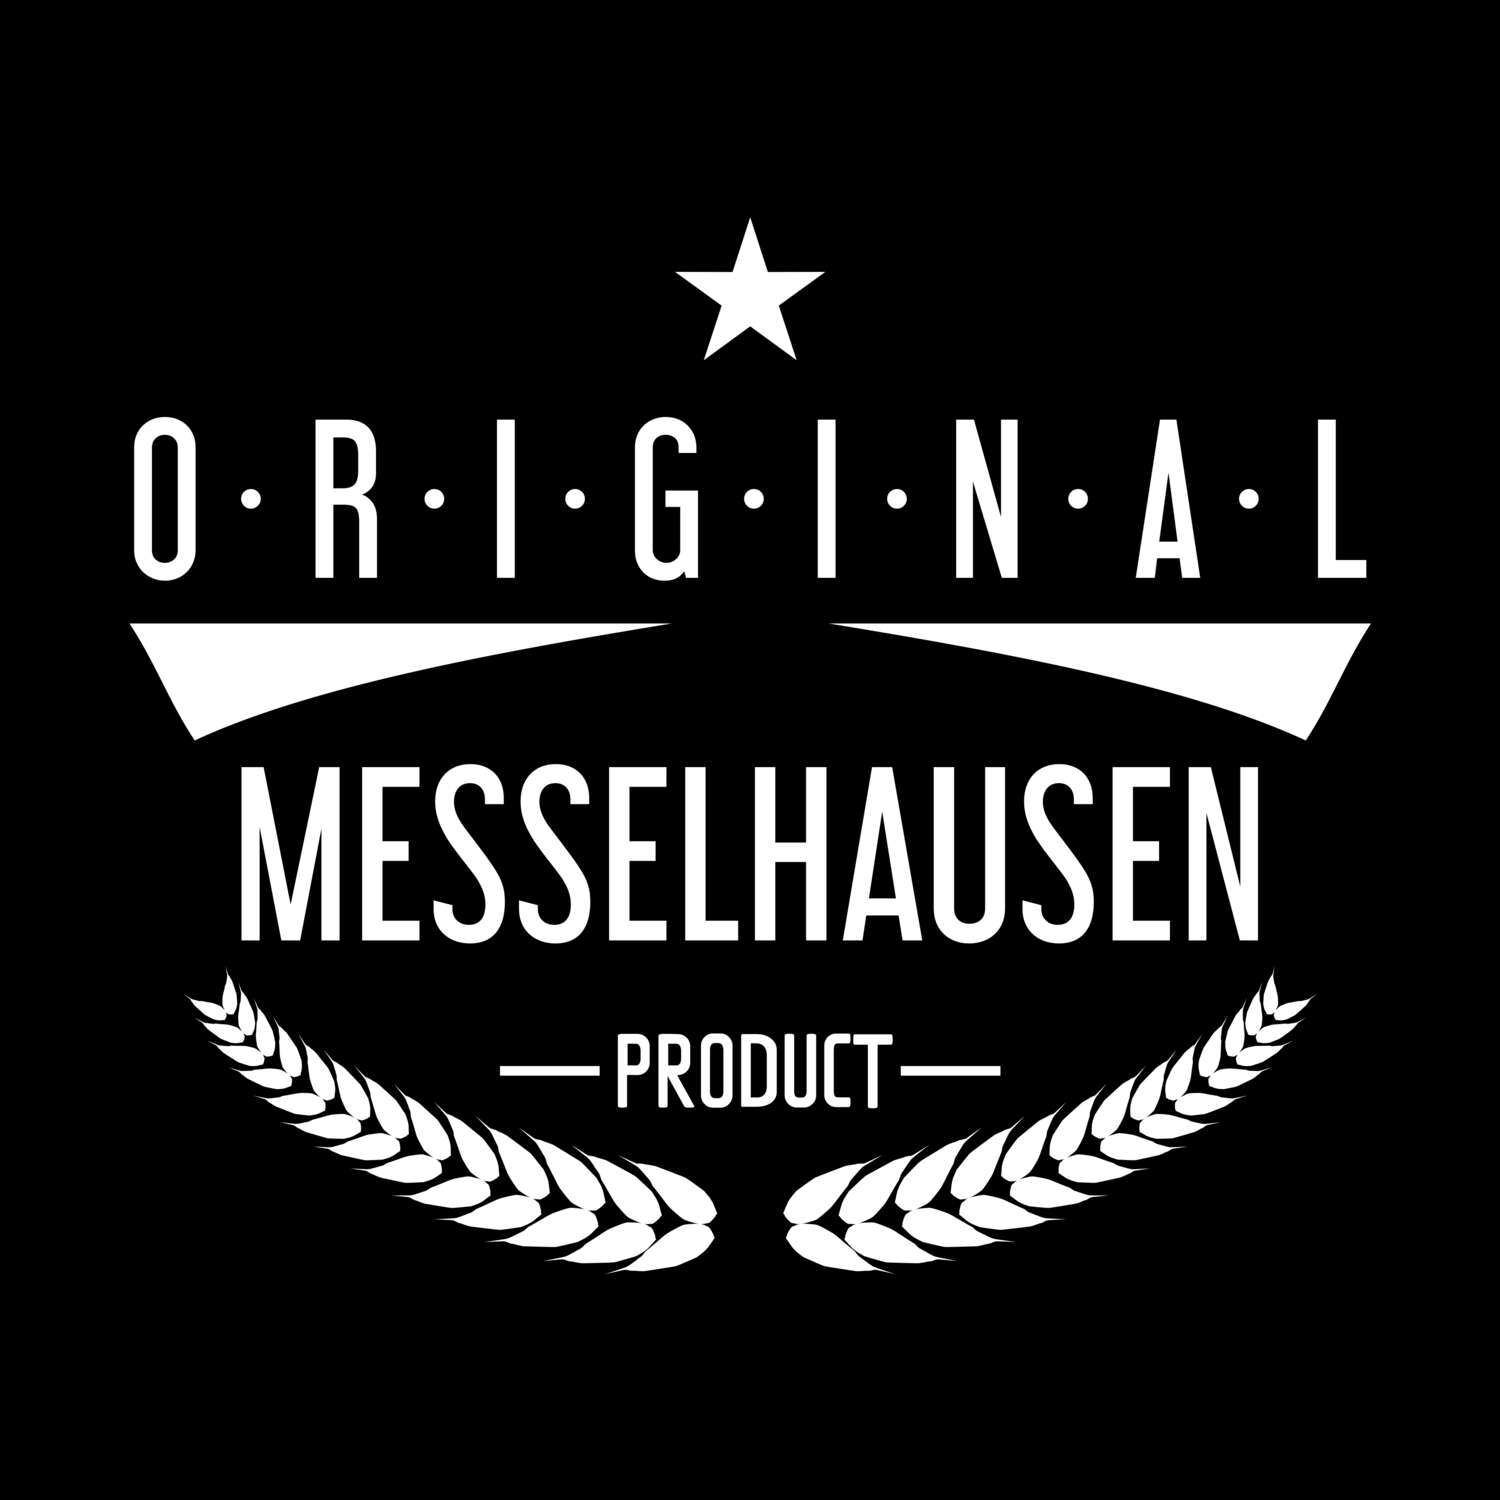 Messelhausen T-Shirt »Original Product«